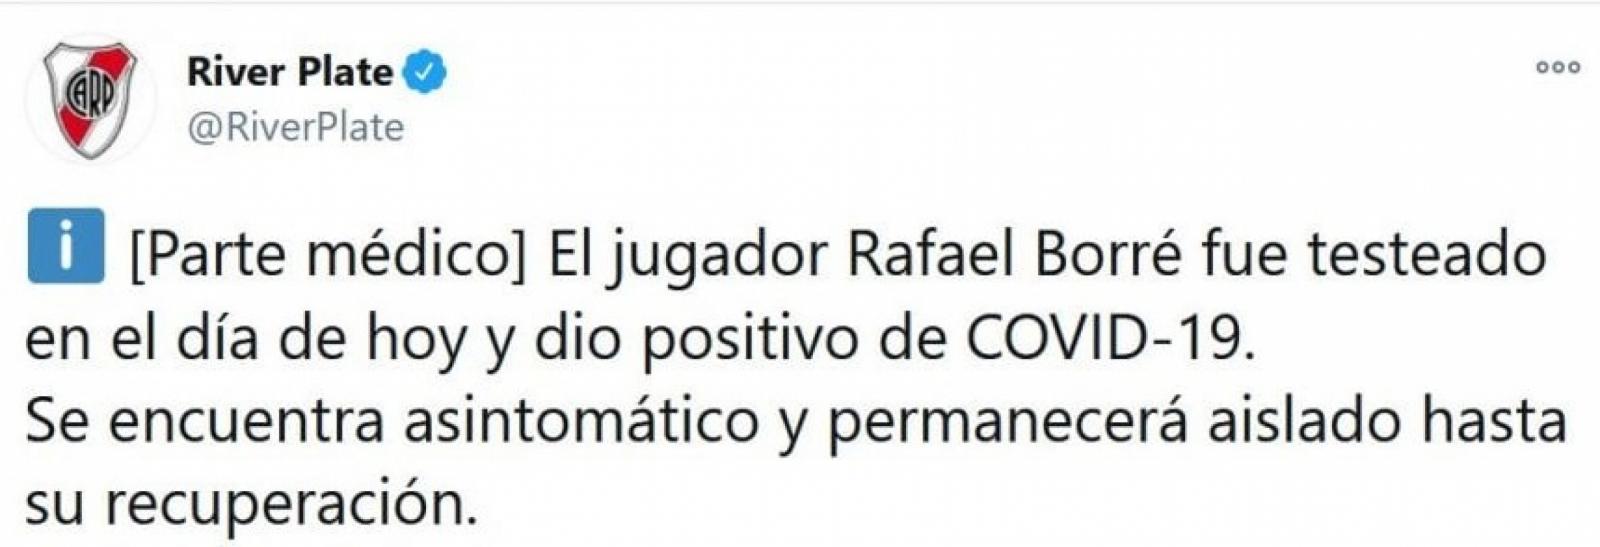 Imagen La cuenta de twitter de River informó la baja de Santos Borré.